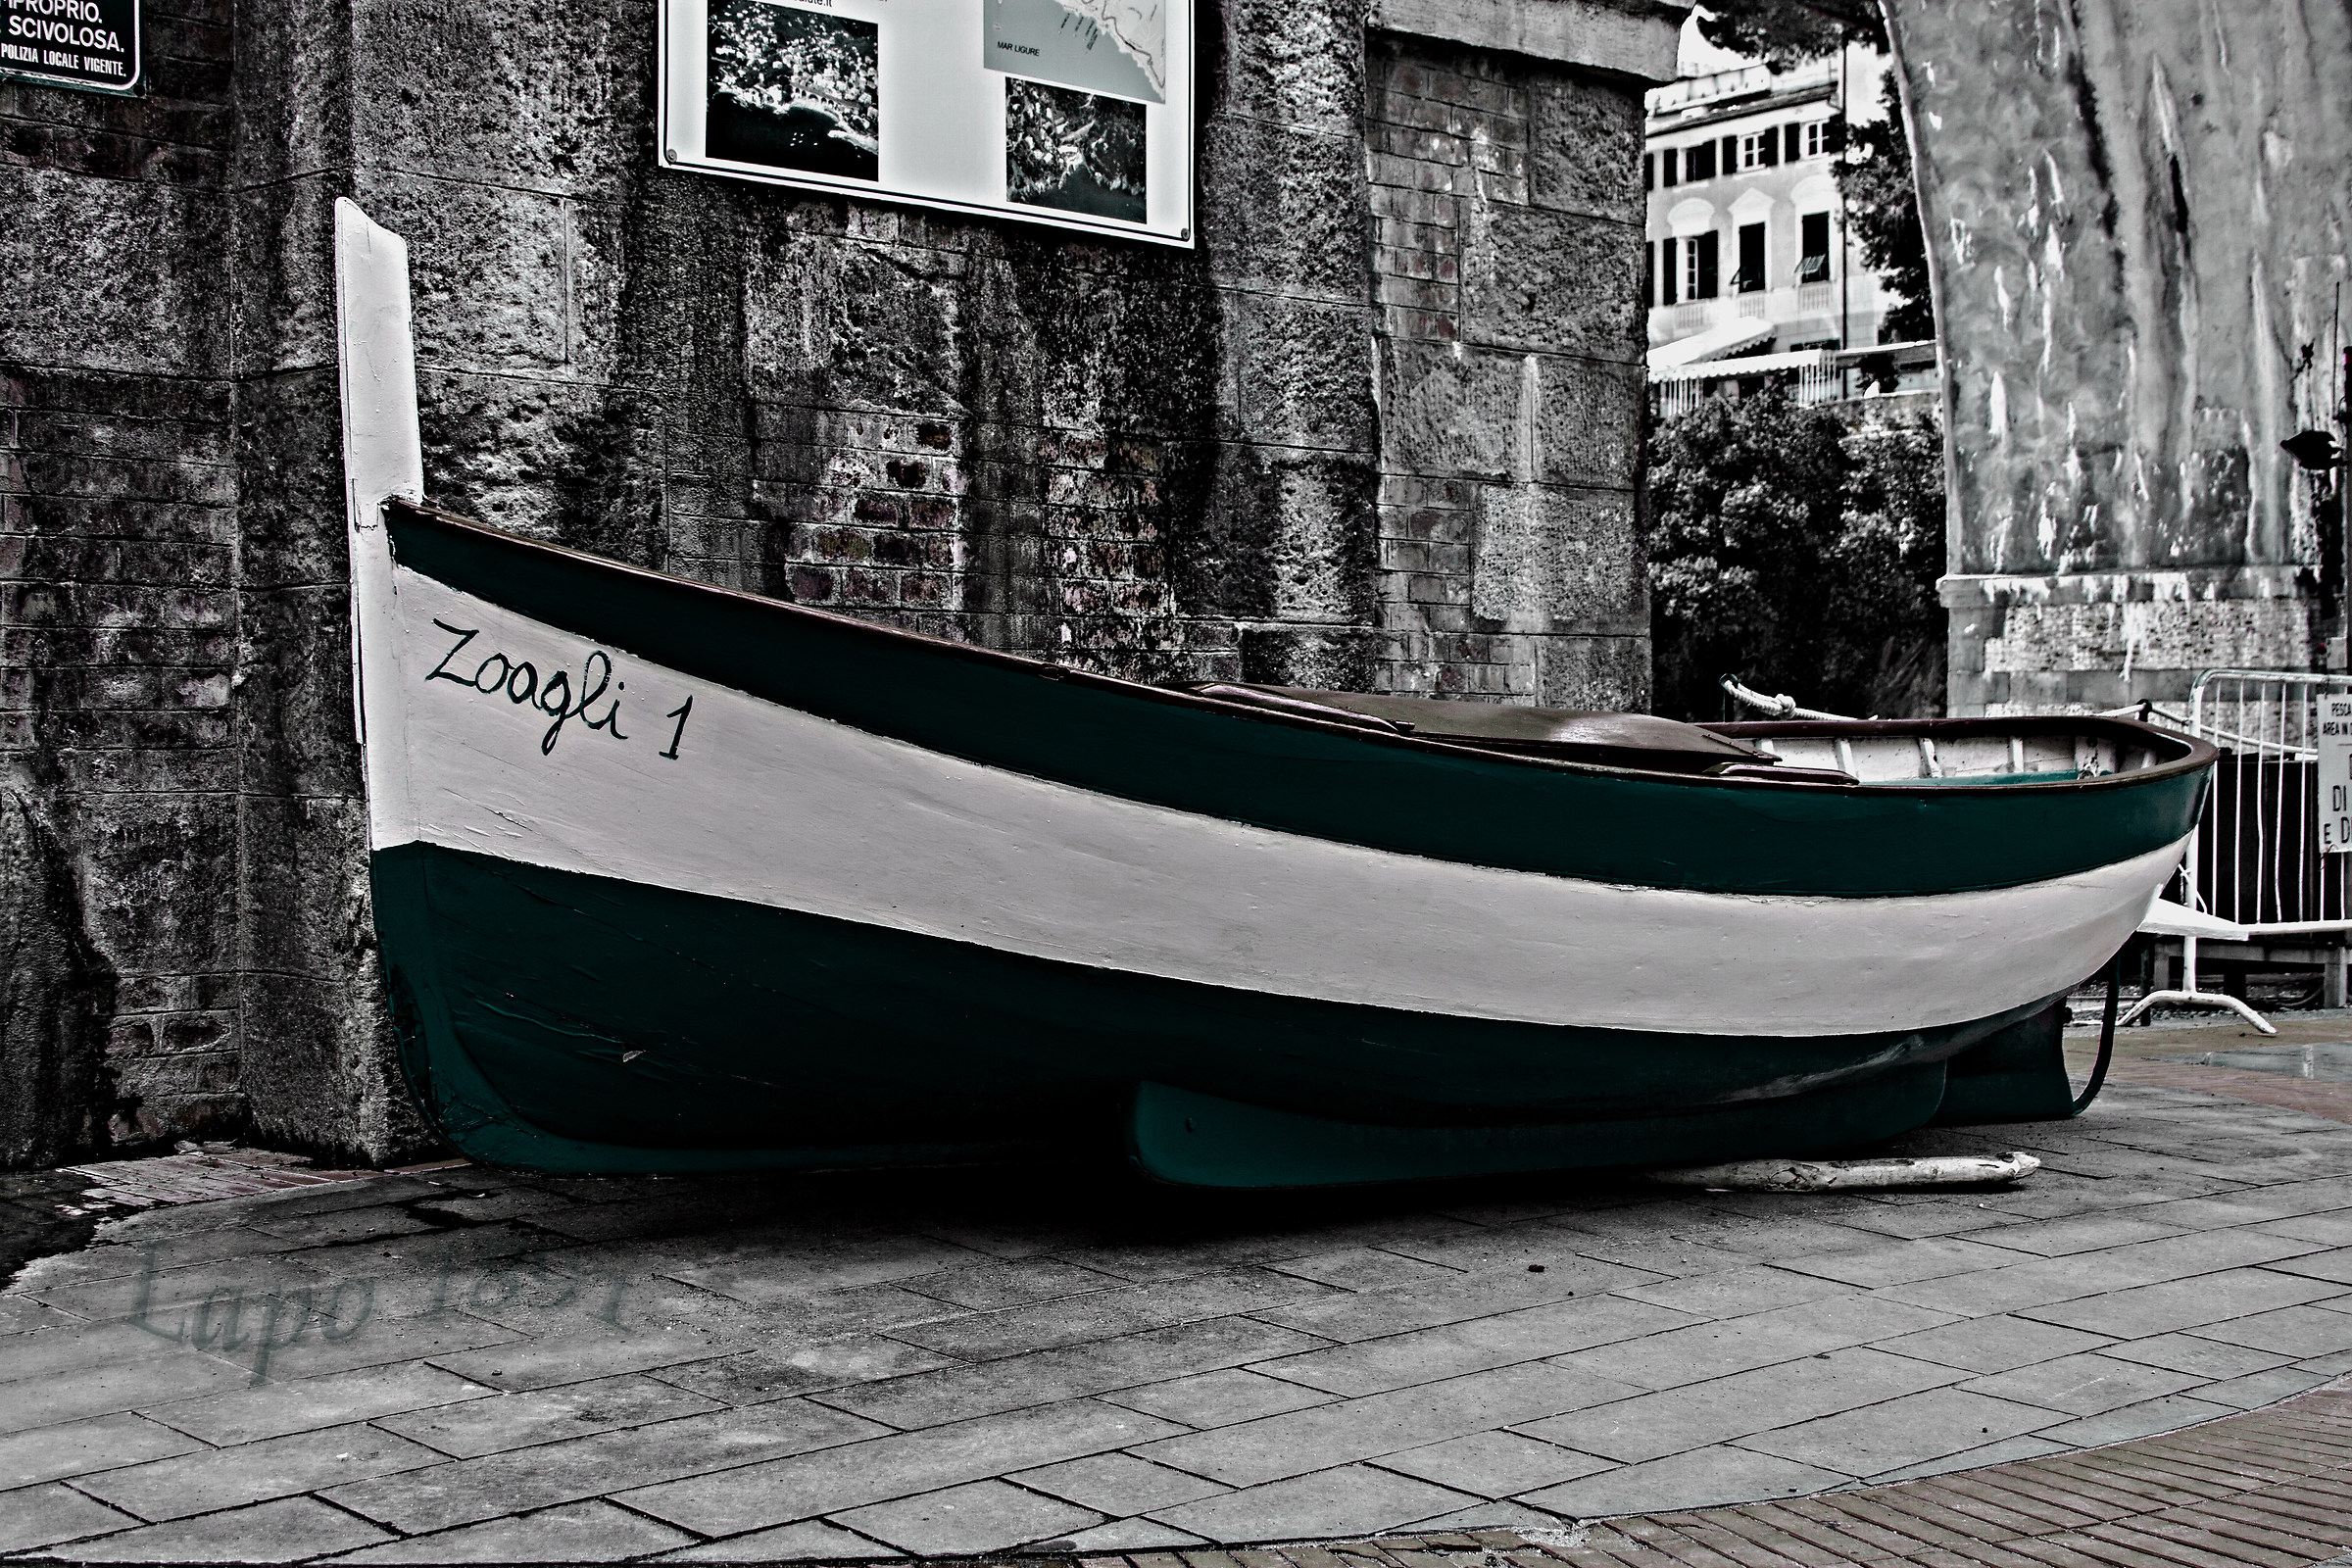 Boat typical of Zoagli...